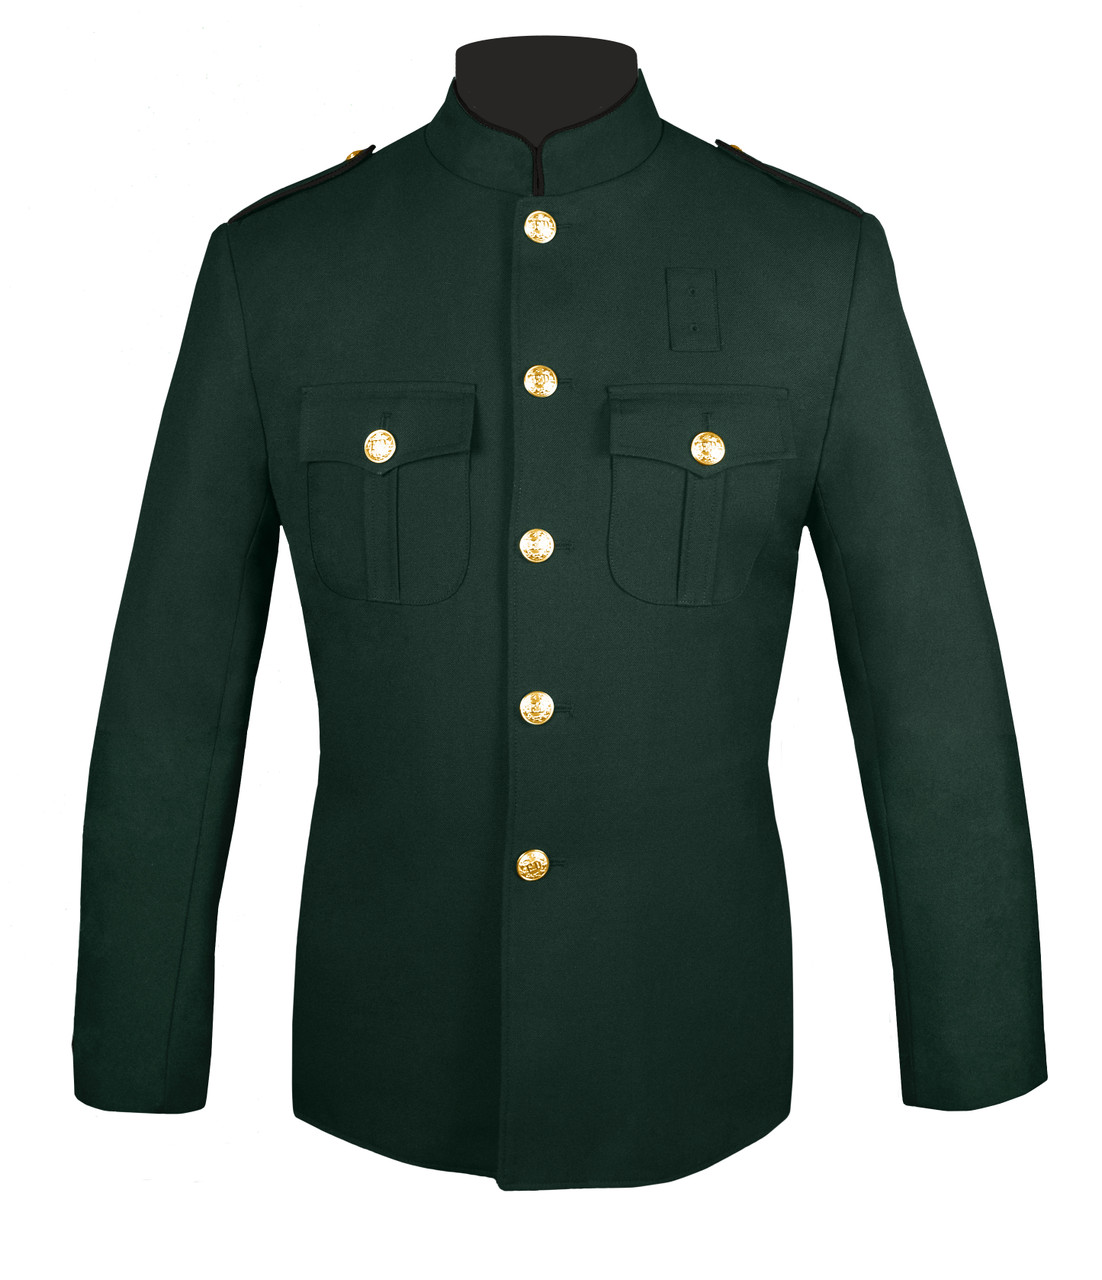 Bottle Green & Black Police Honor Guard Jacket | J. Higgins, Ltd.